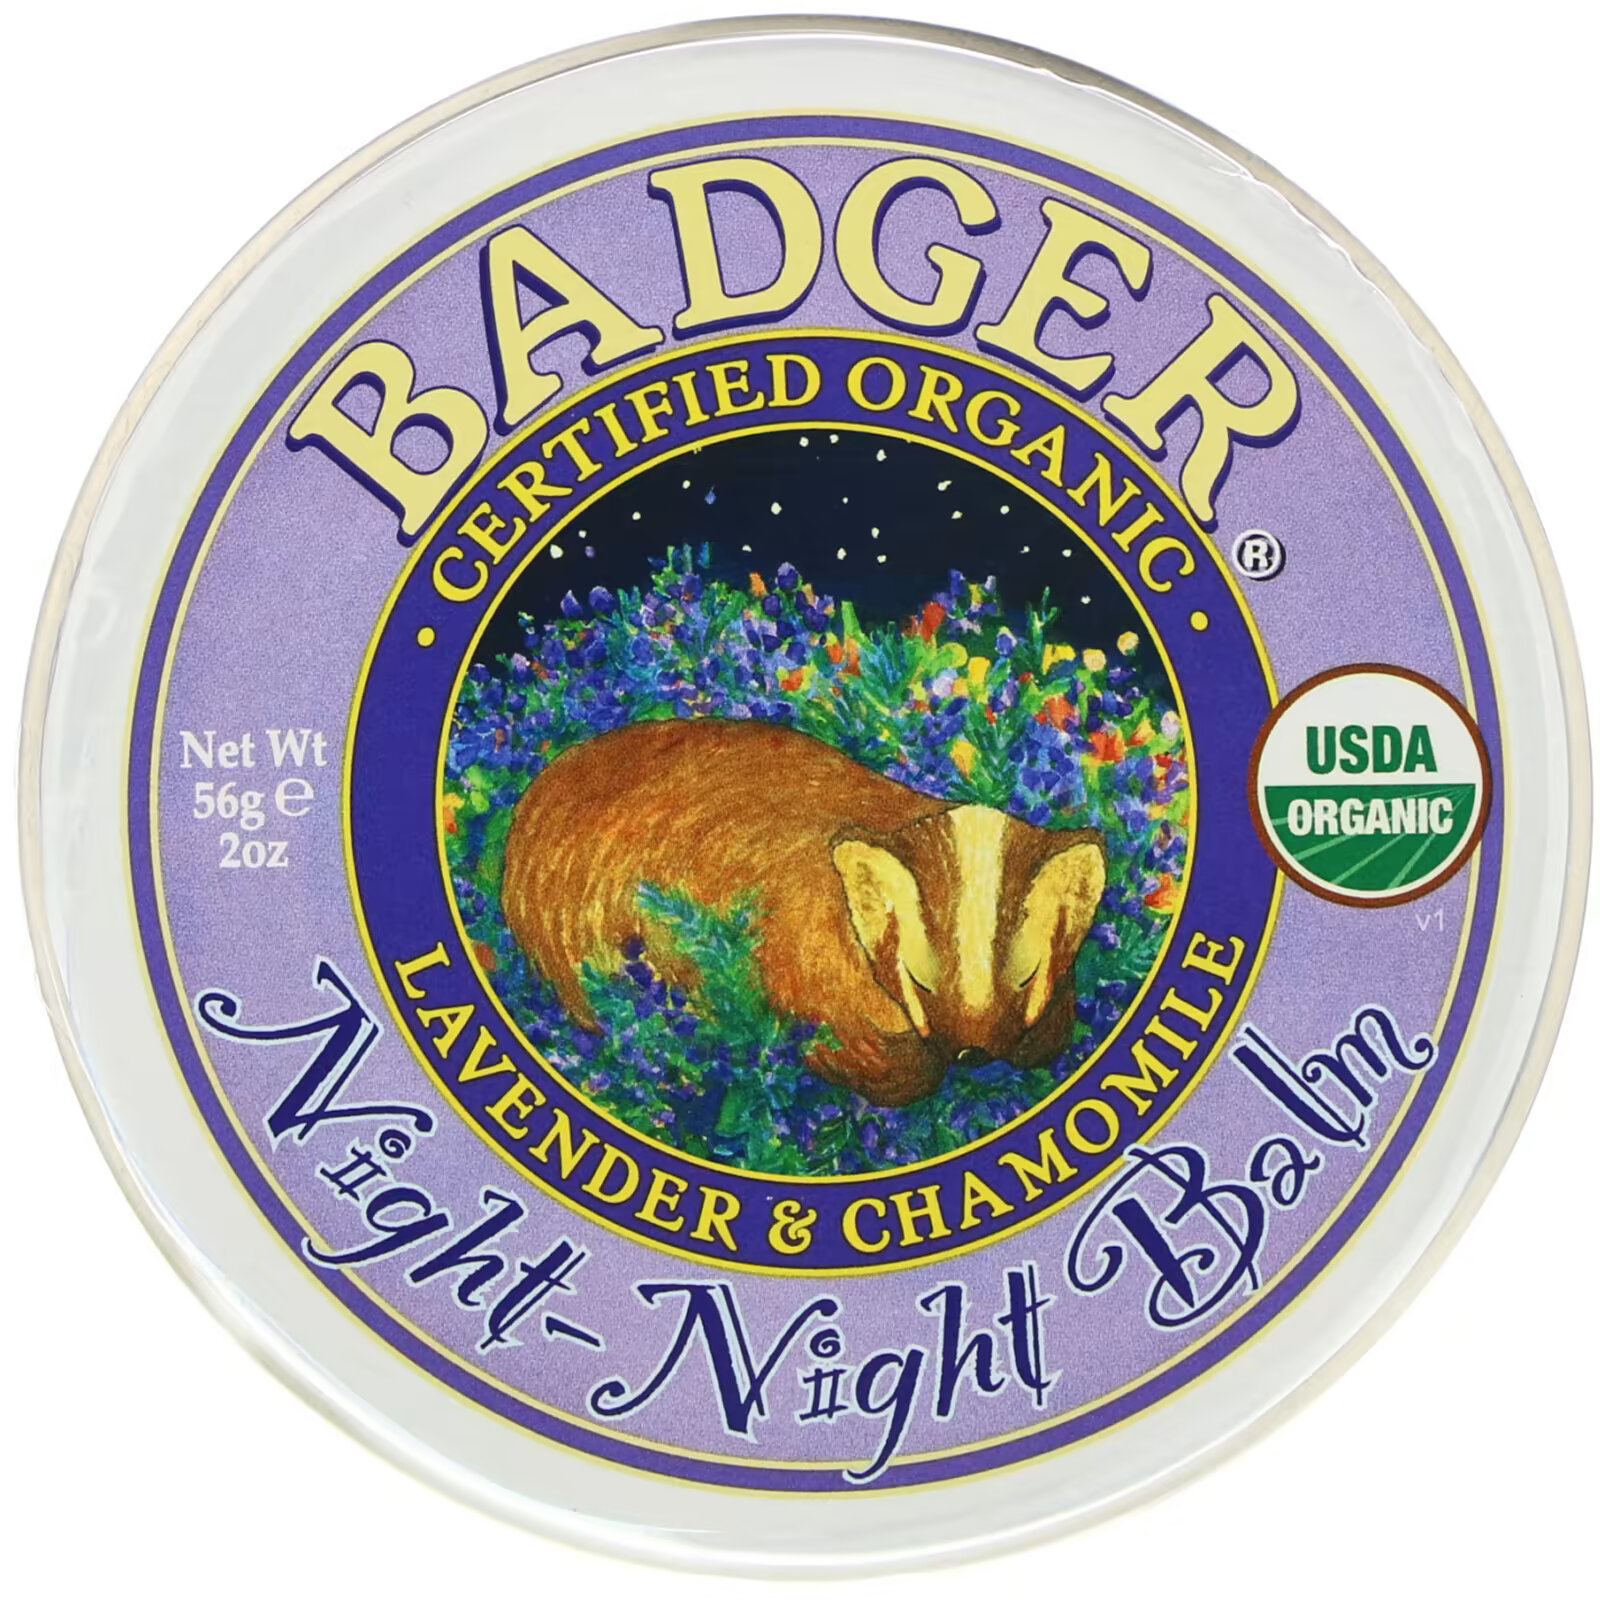 Badger Company, Organic, бальзам ночь-ночь, лаванда и ромашка, 2 унции (56 г) badger company бальзам для ног перечная мята и чайное дерево 56 г 2 унции